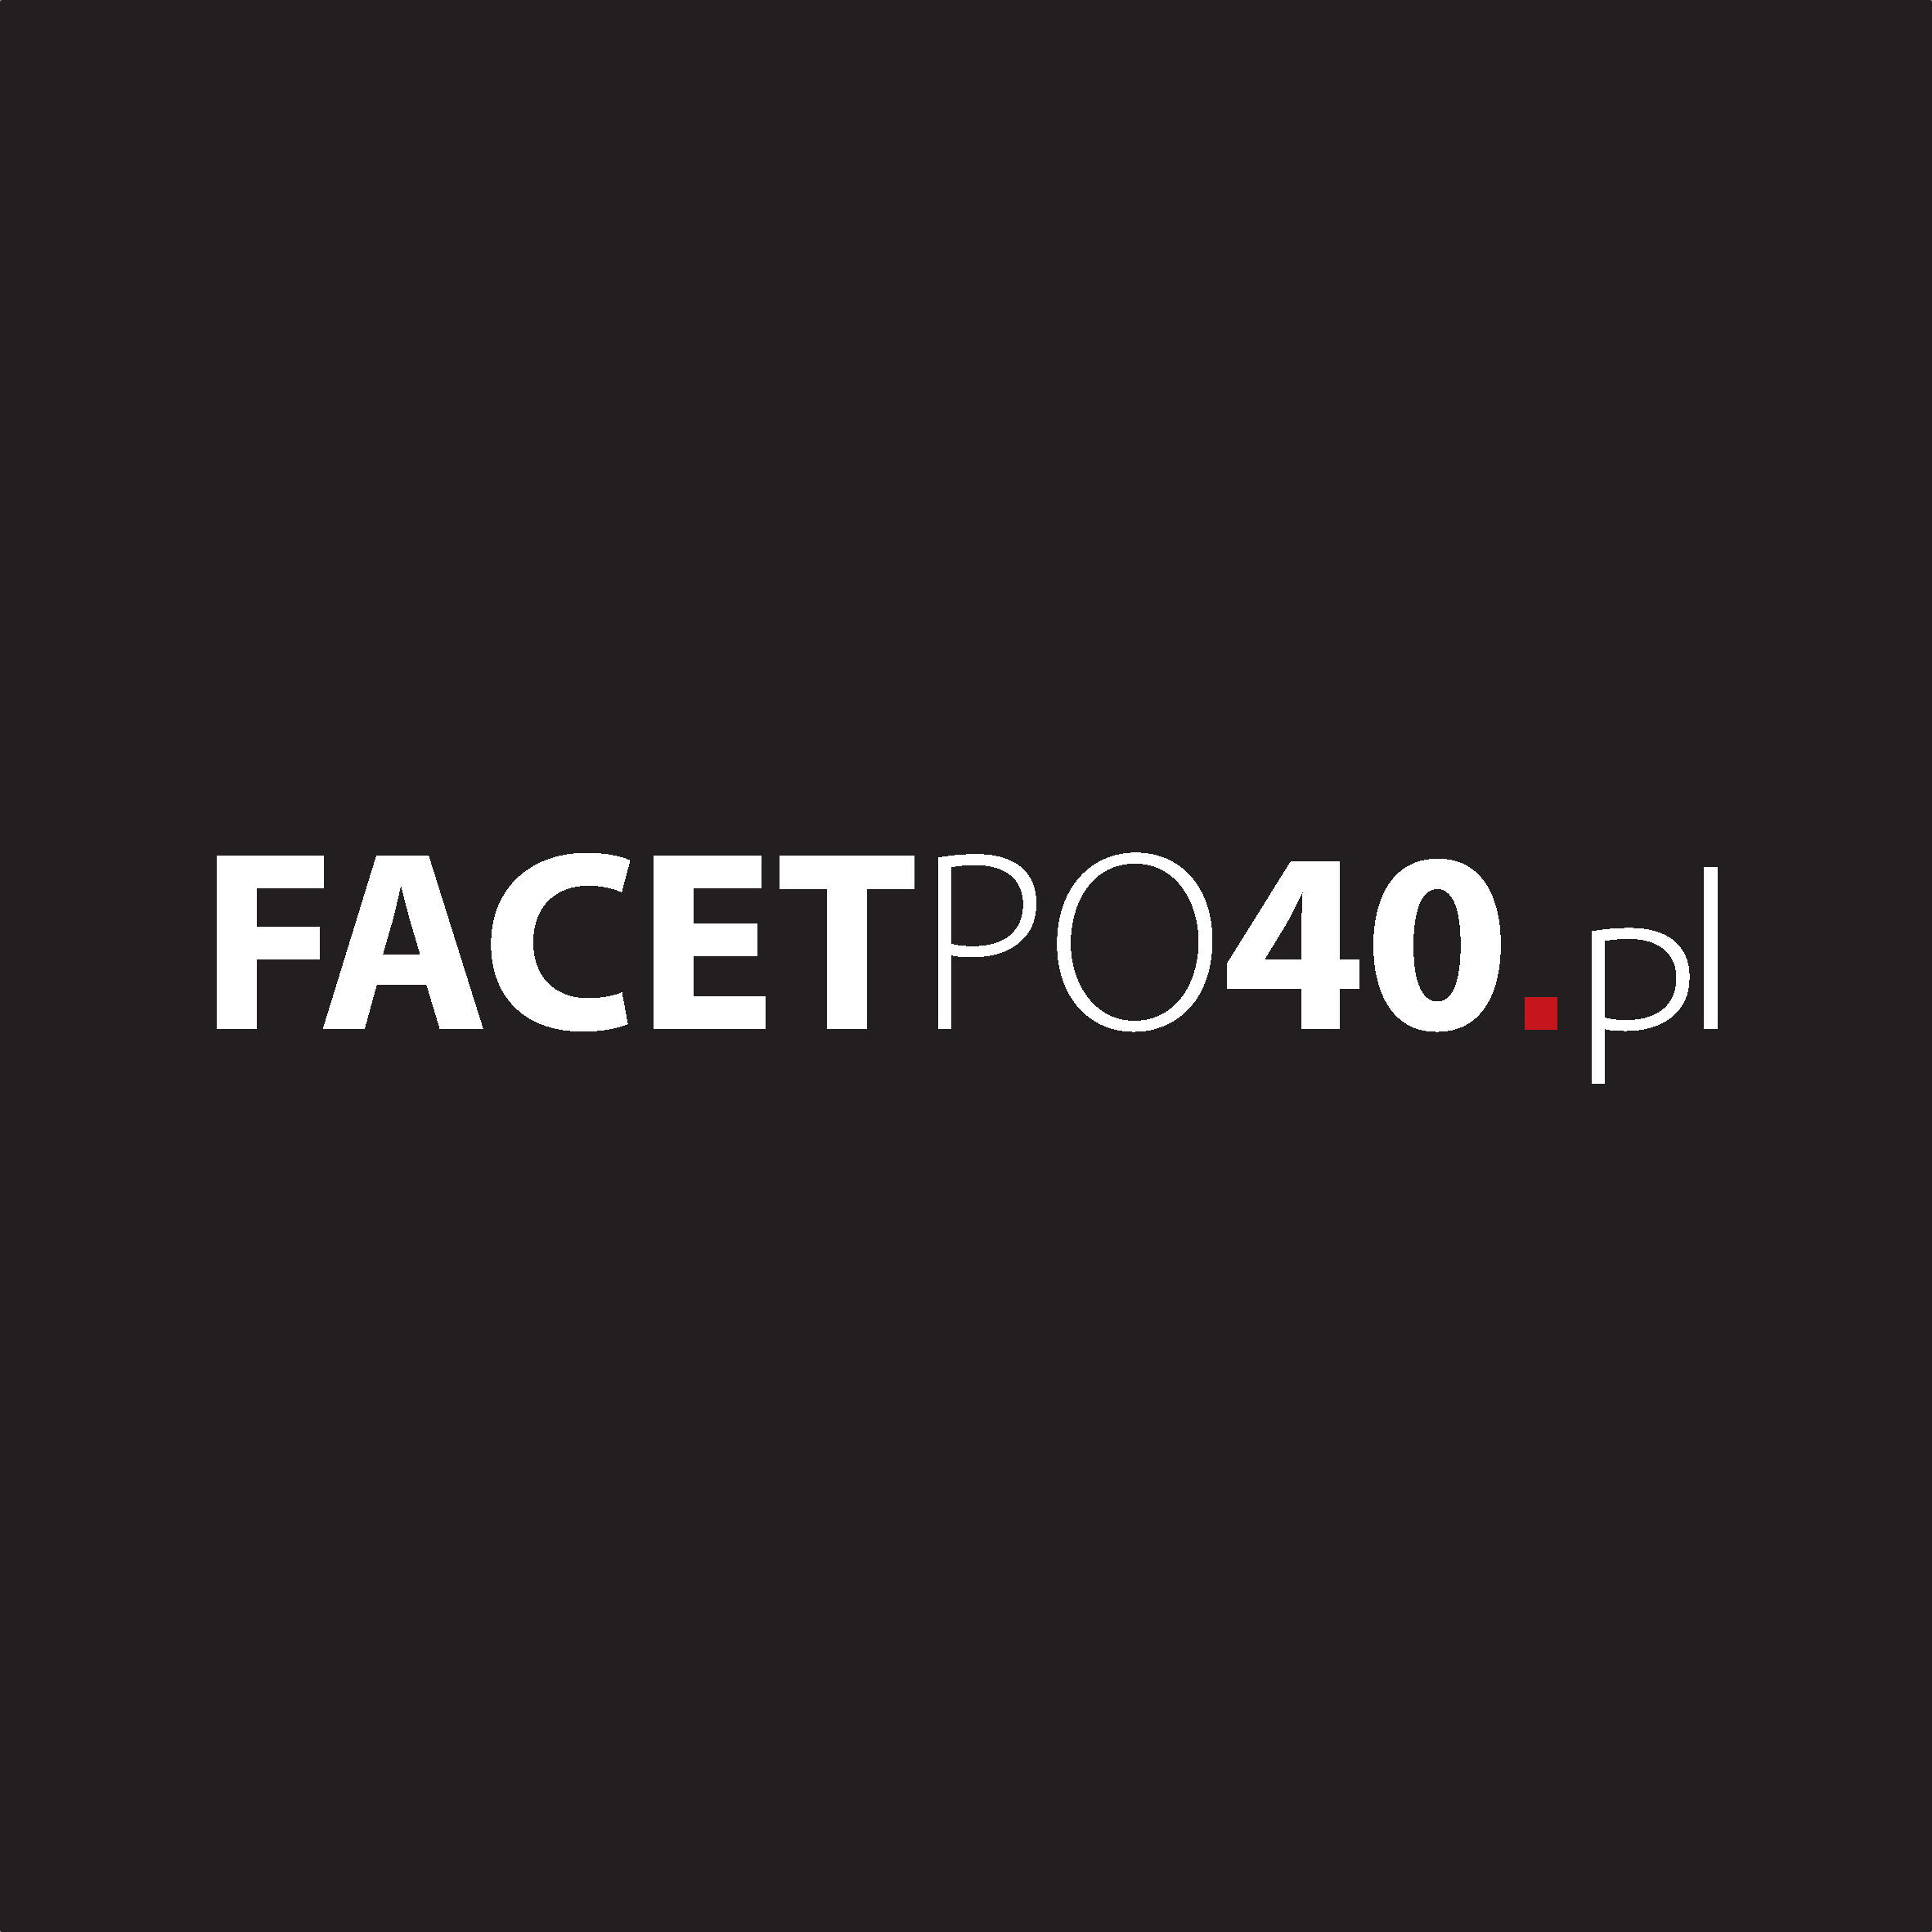 Facetpo40.pl